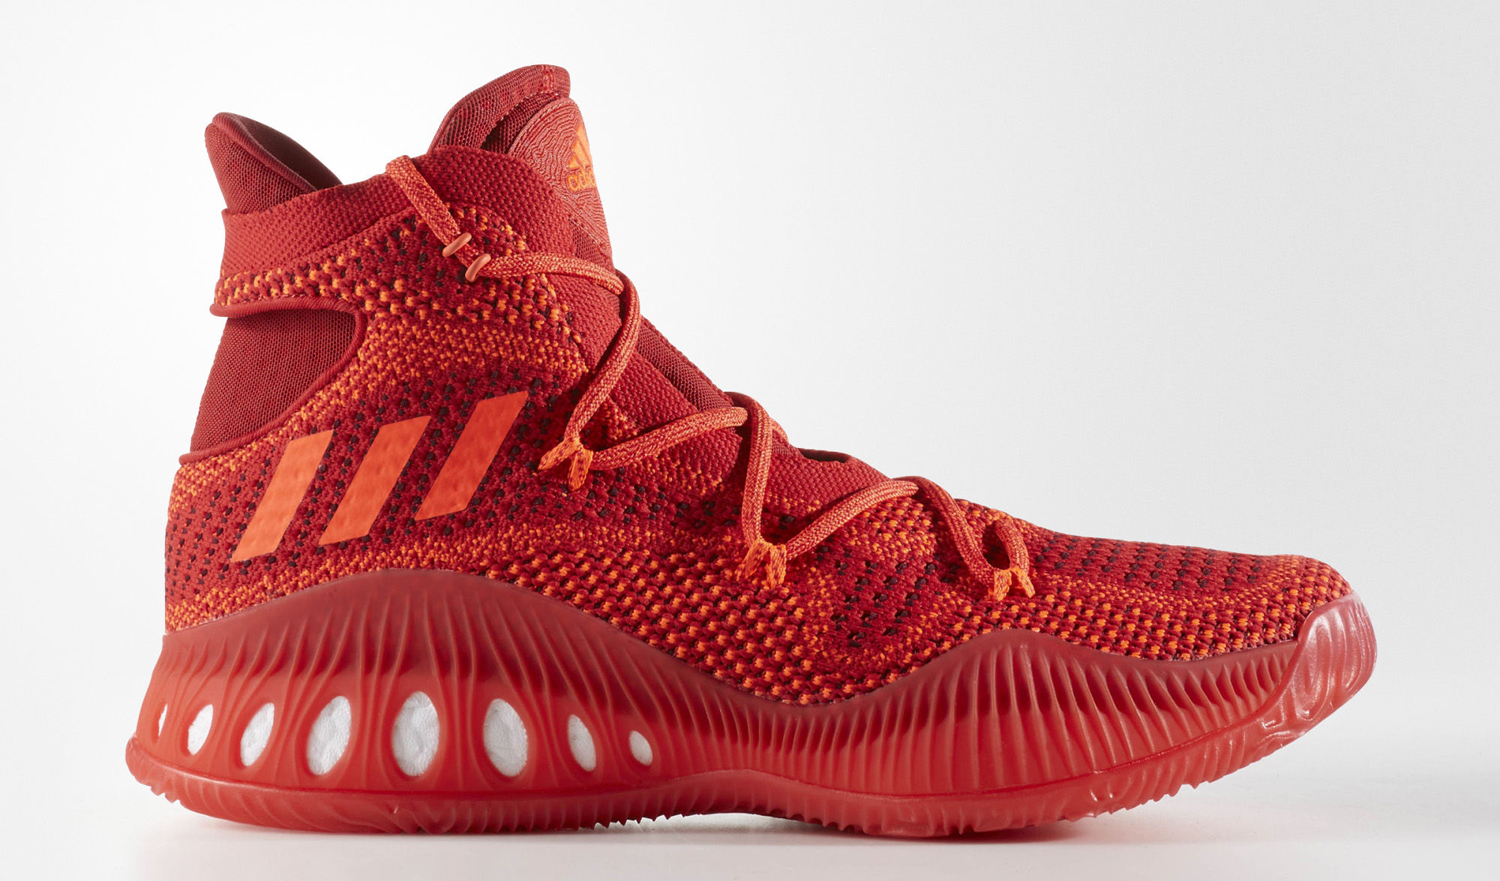 Adidas Crazy Explosive Primeknit Red | Sole Collector